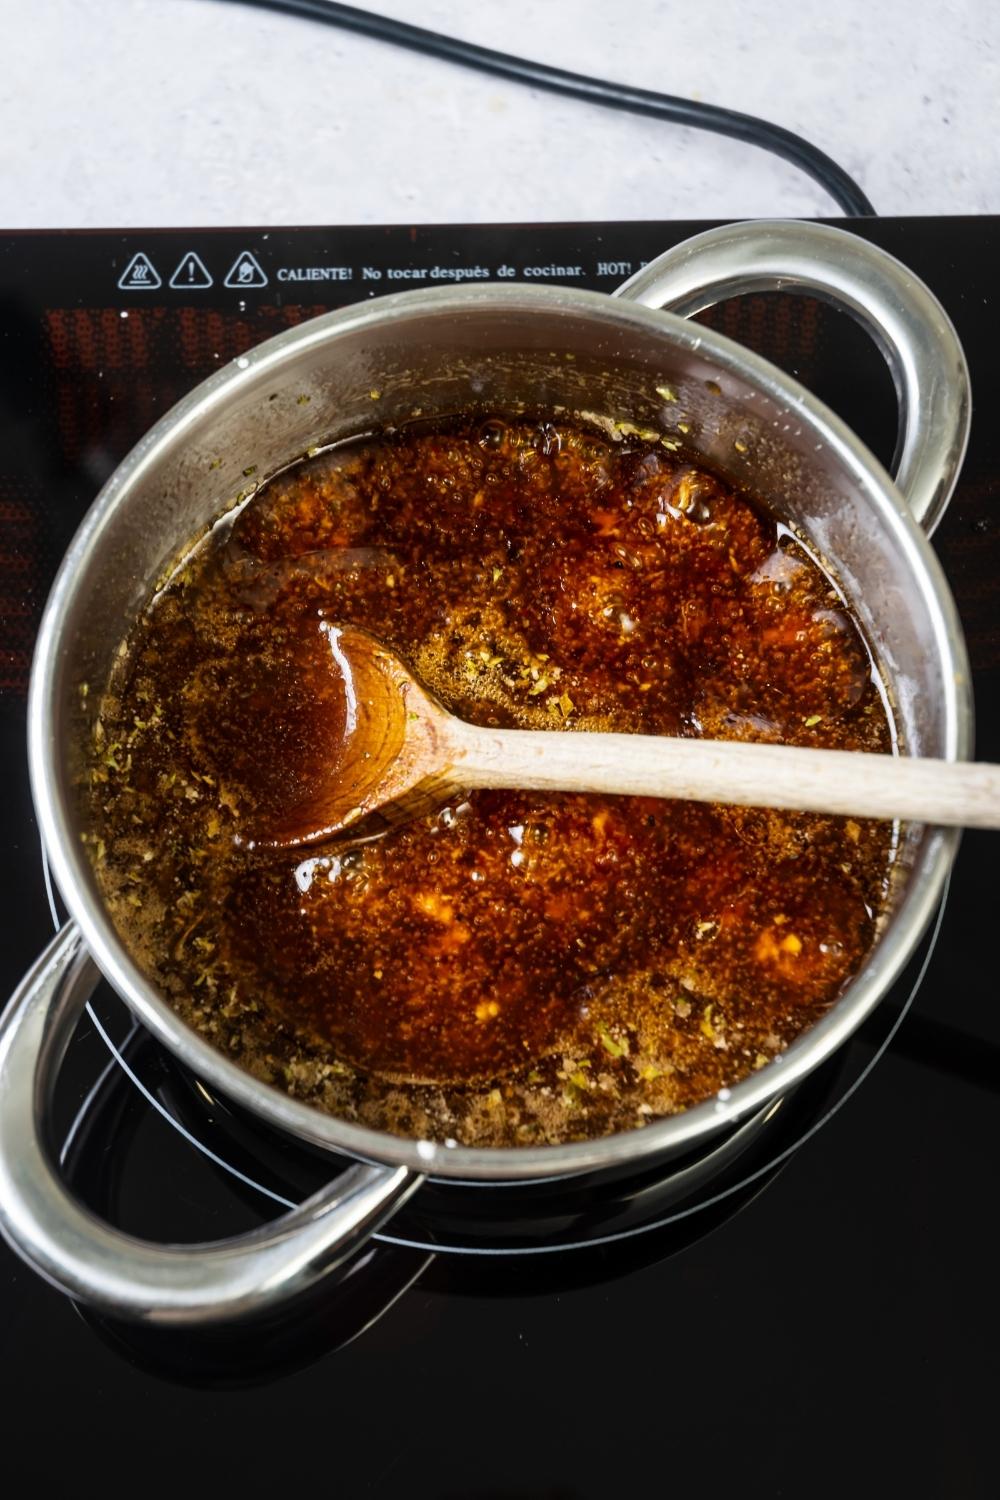 Szechuan sauce cooking in a pot on a burner.